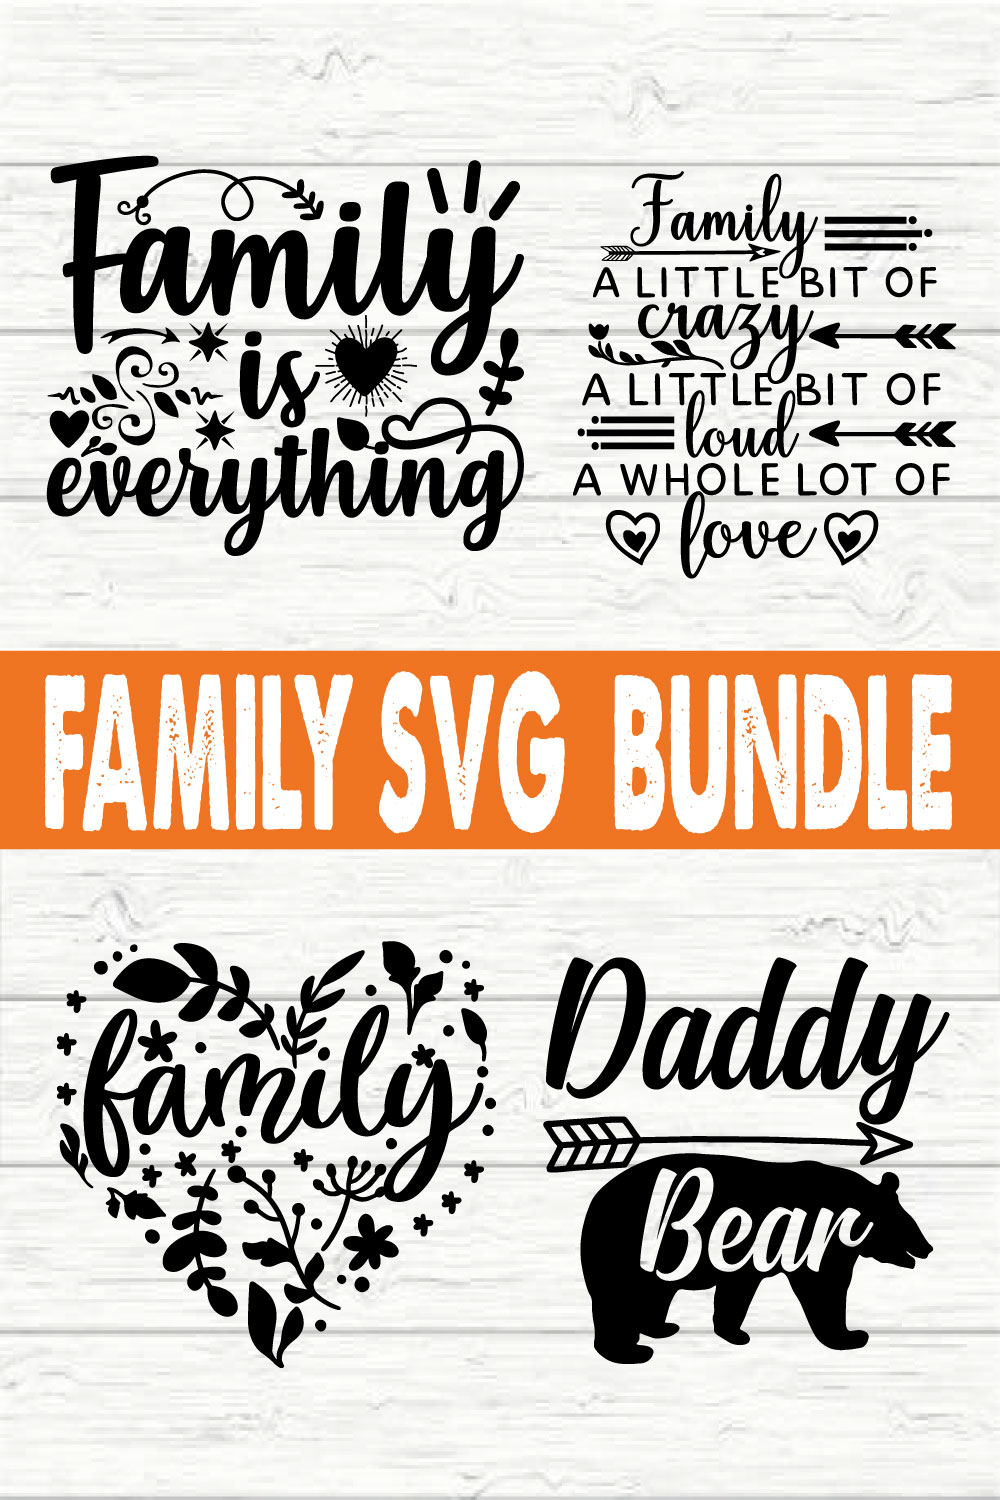 Family Svg Bundle vol 2 pinterest preview image.